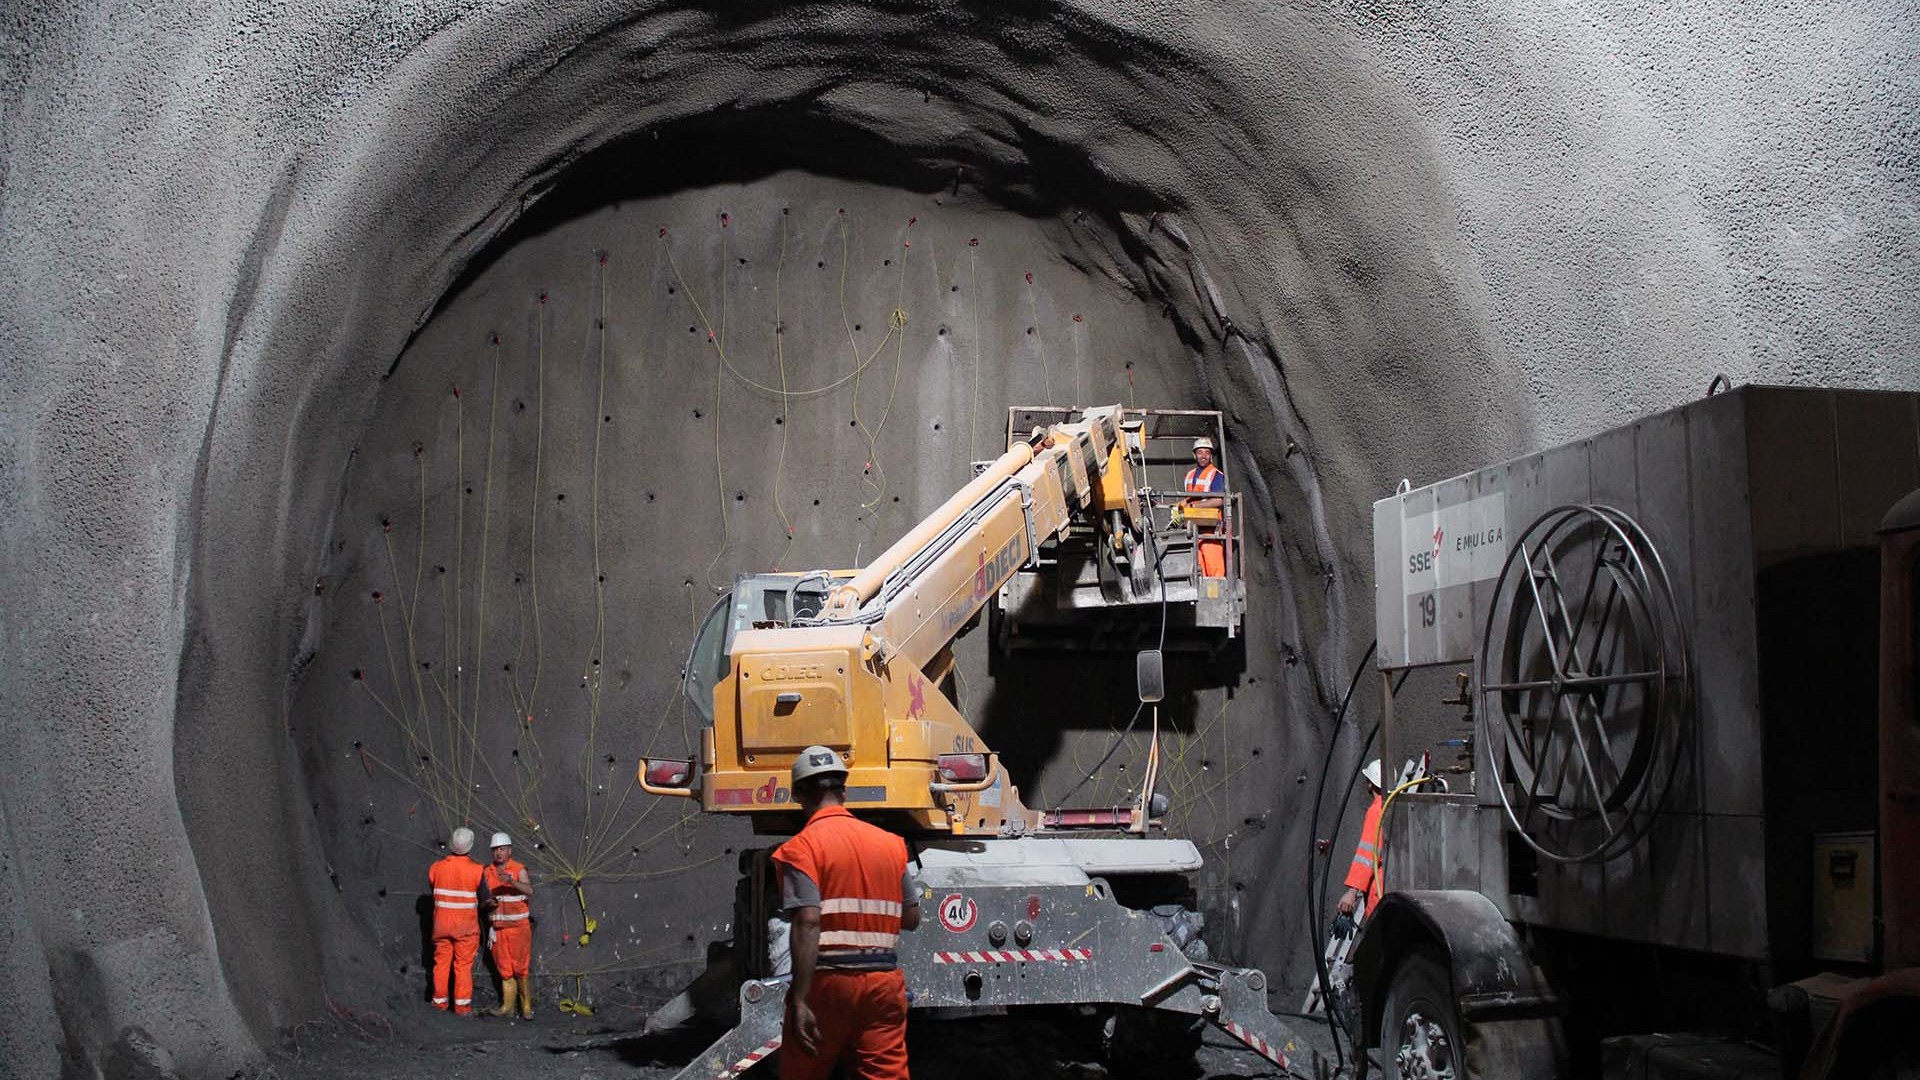 Langtunnelbeschluss für mindestens 400 Mio. Euro mit Hilfe der AfD beschlossen